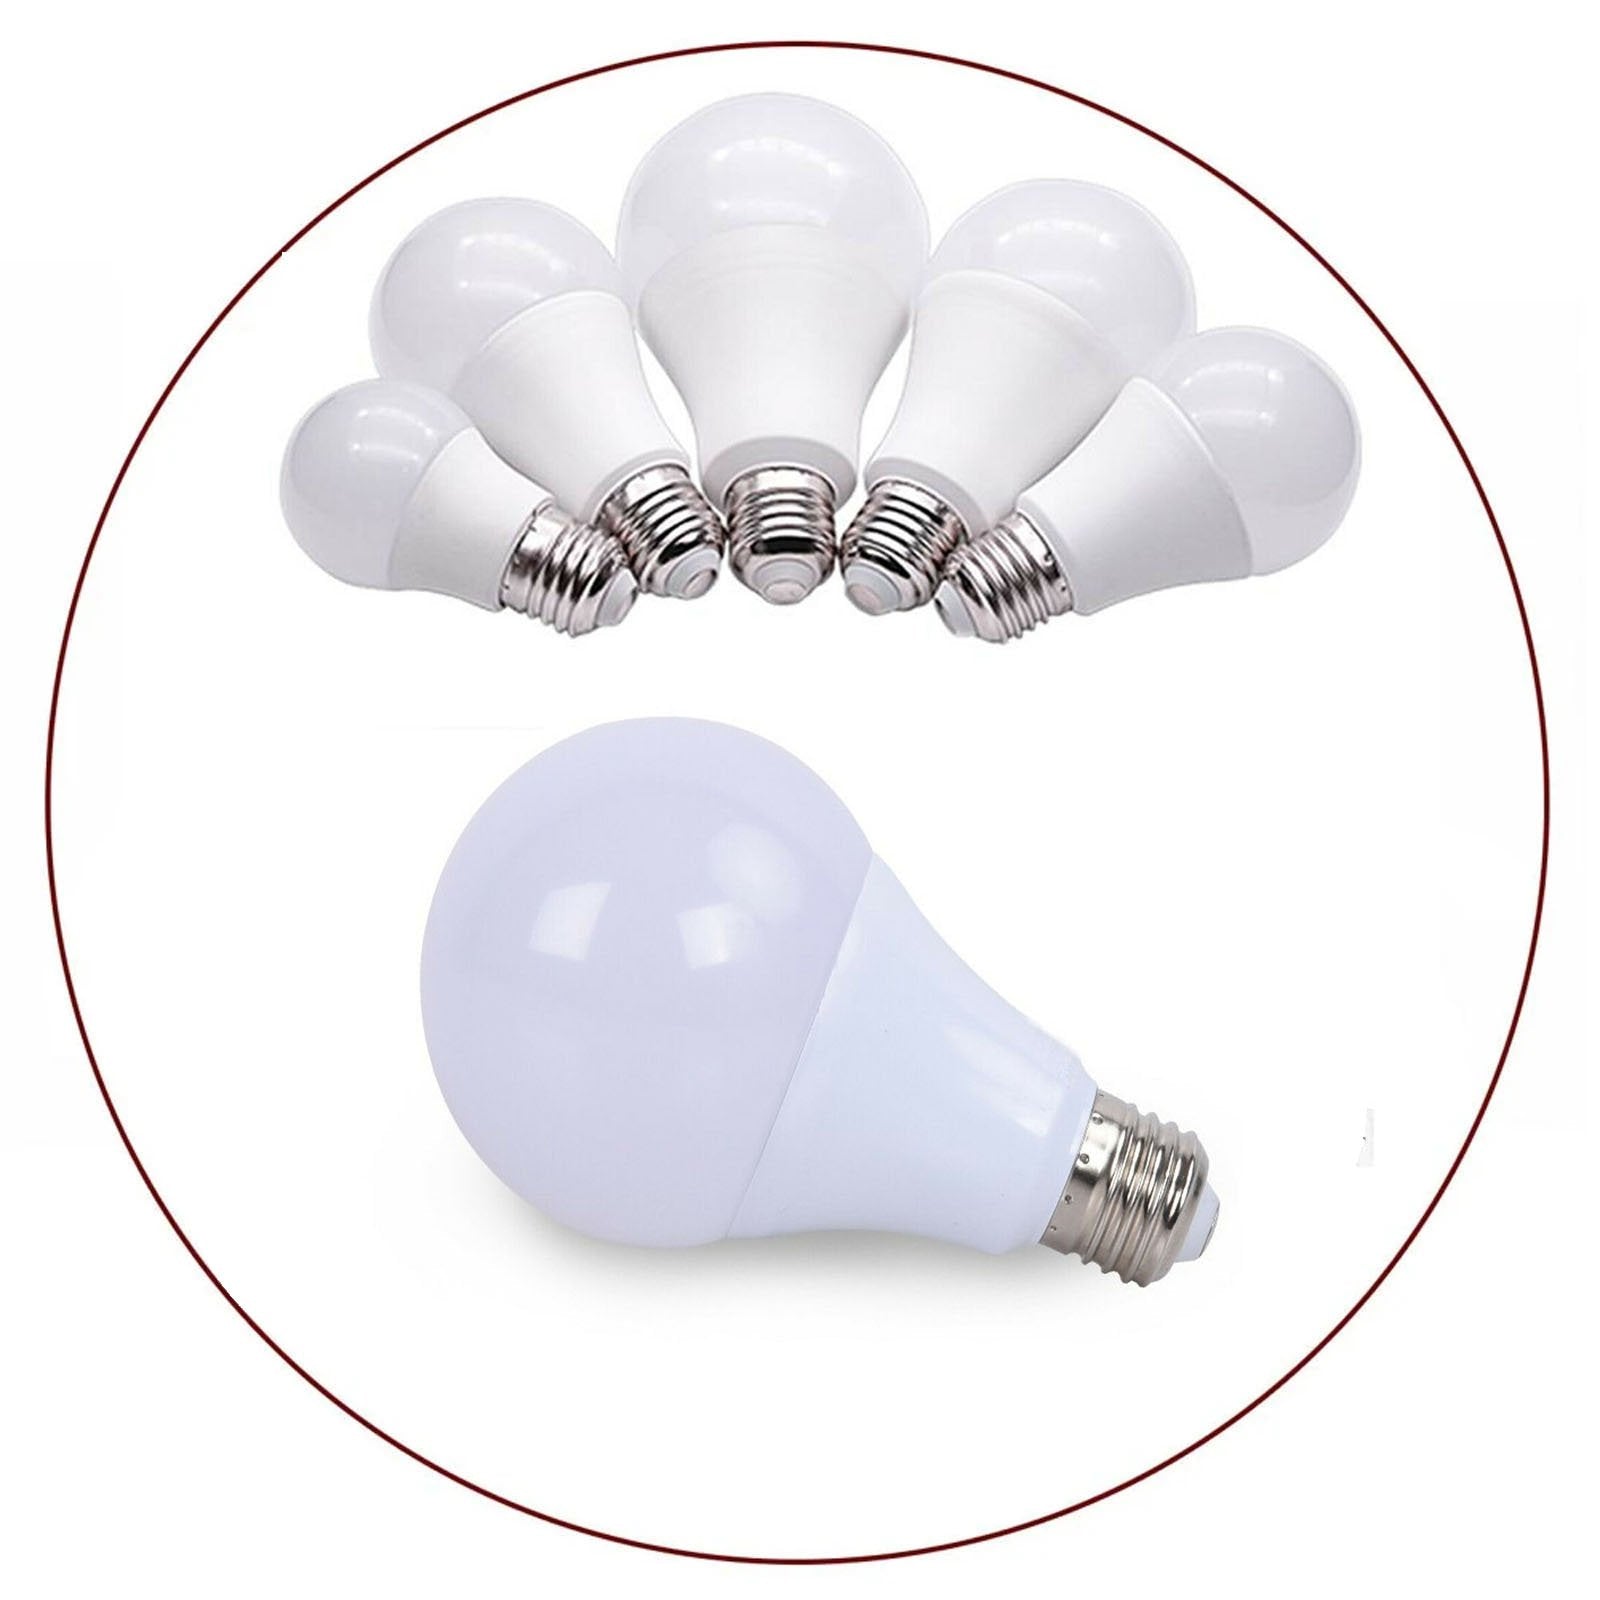  Cool White Led Light Bulbs